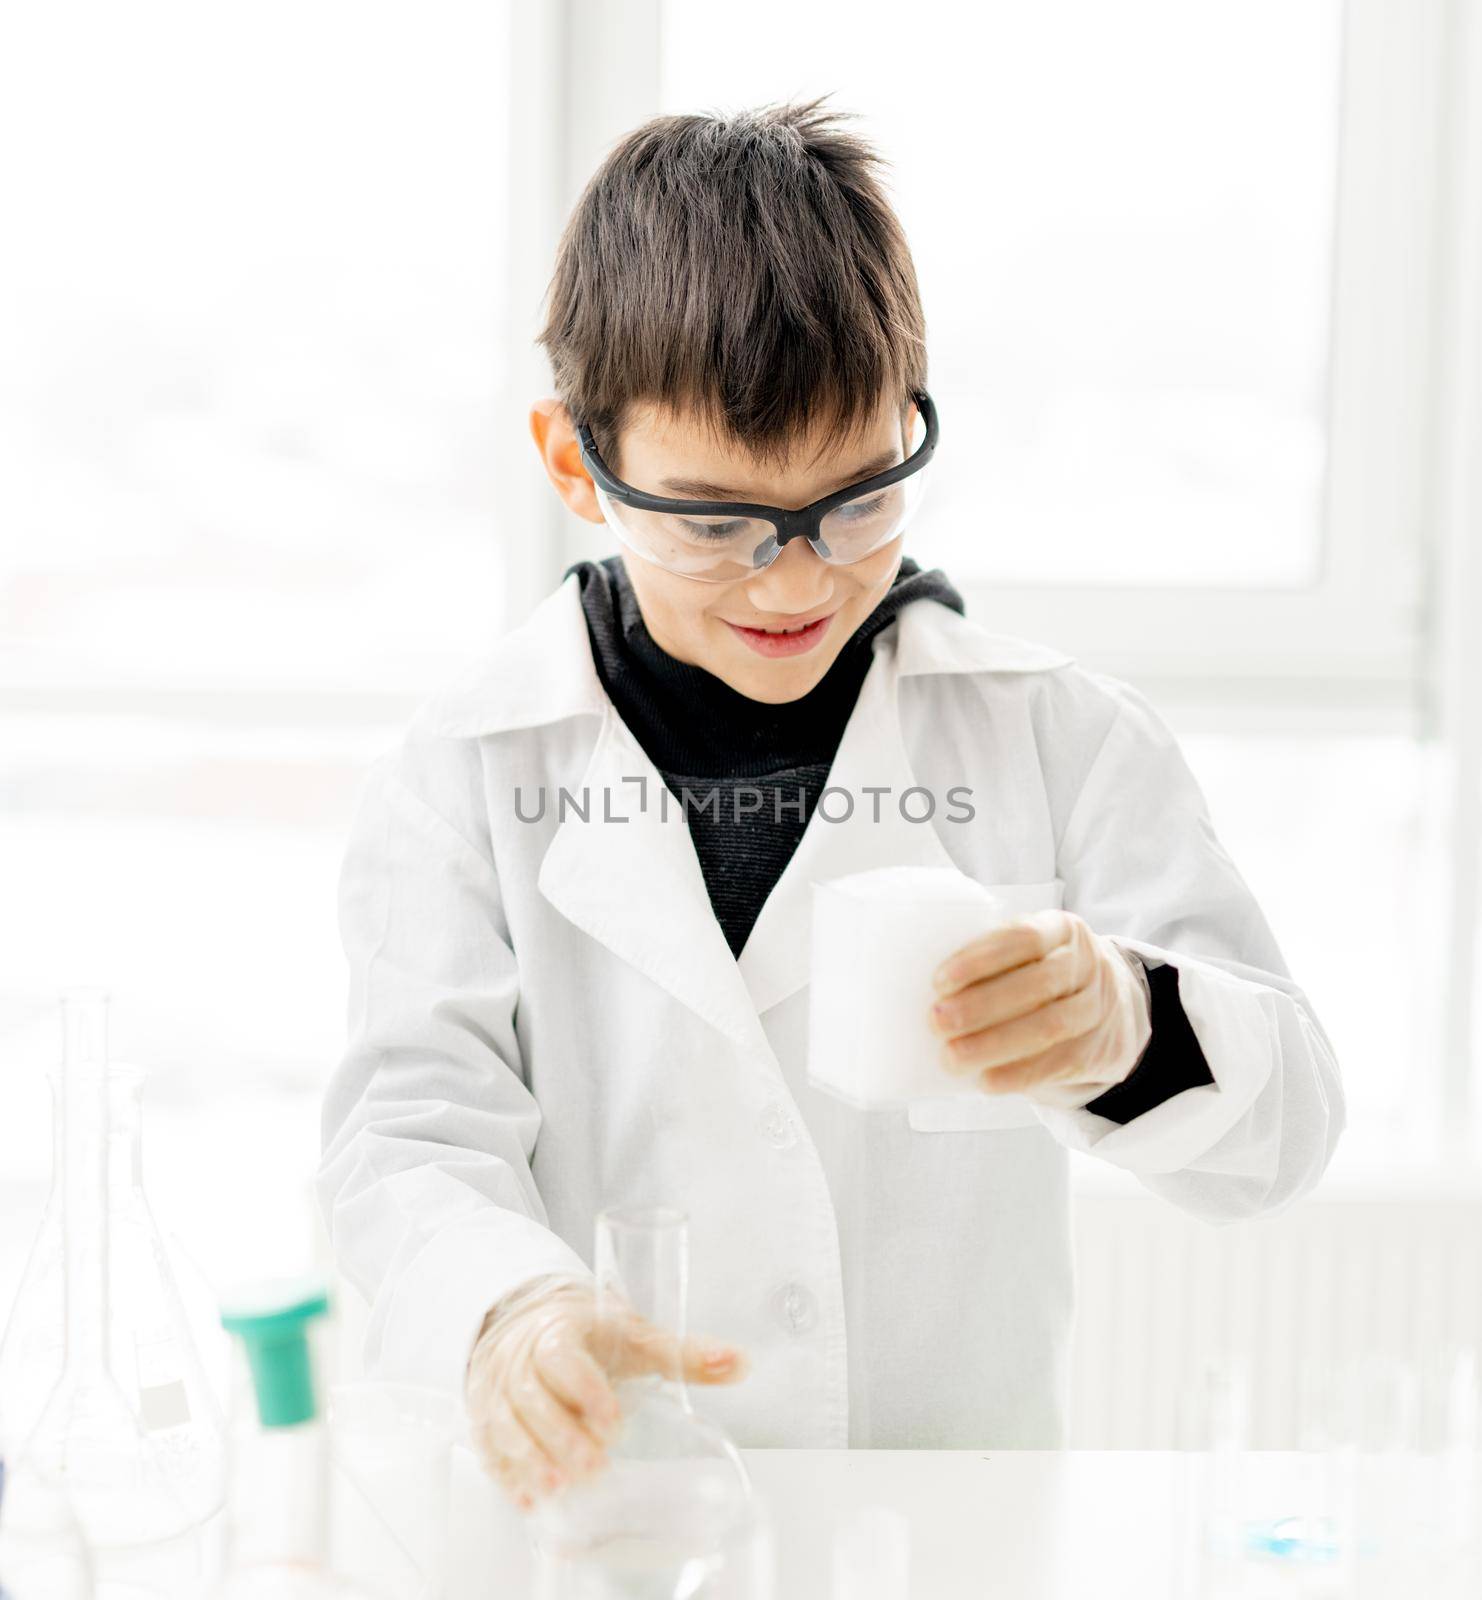 School boy in chemistry class by tan4ikk1